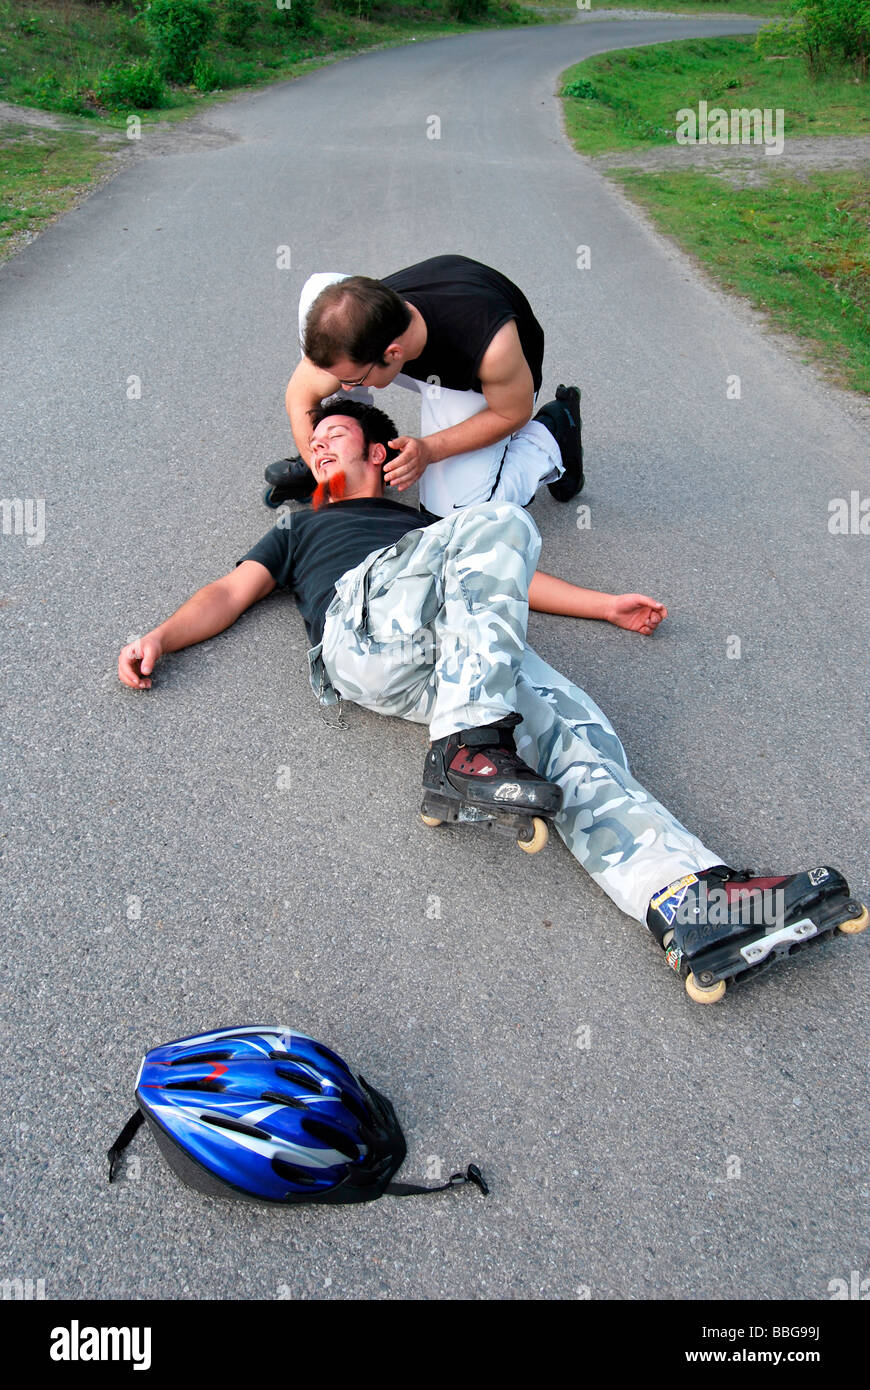 Erste Hilfe, Inline-Skater auf dem Boden nach Sturz, bewegungslos, Person, die hilft Stockfoto